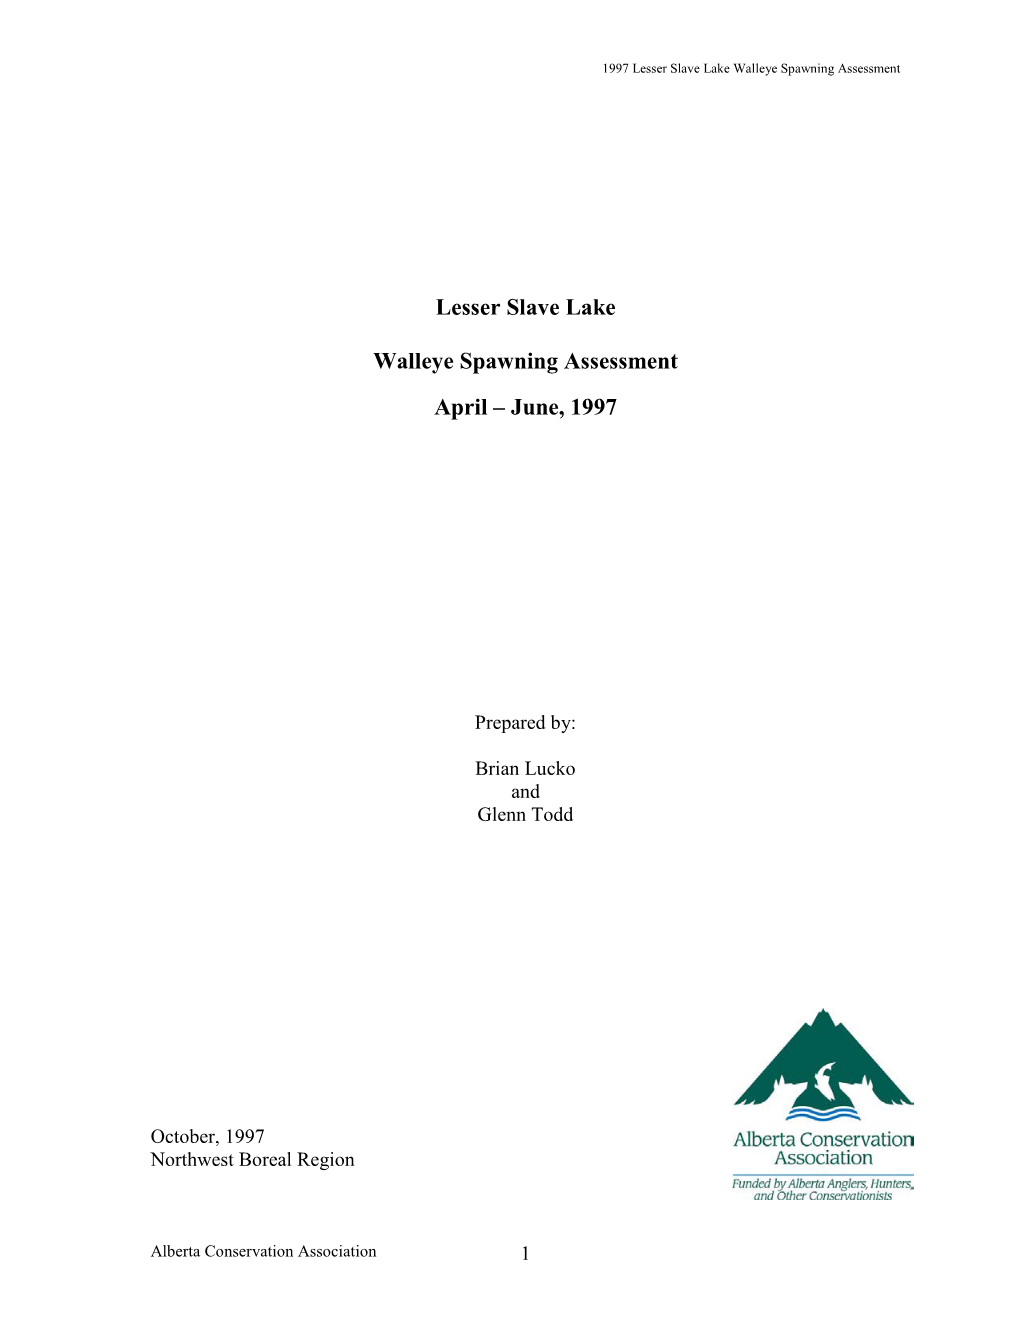 Lesser Slave Lake Walleye Spawning Assessment April – June, 1997